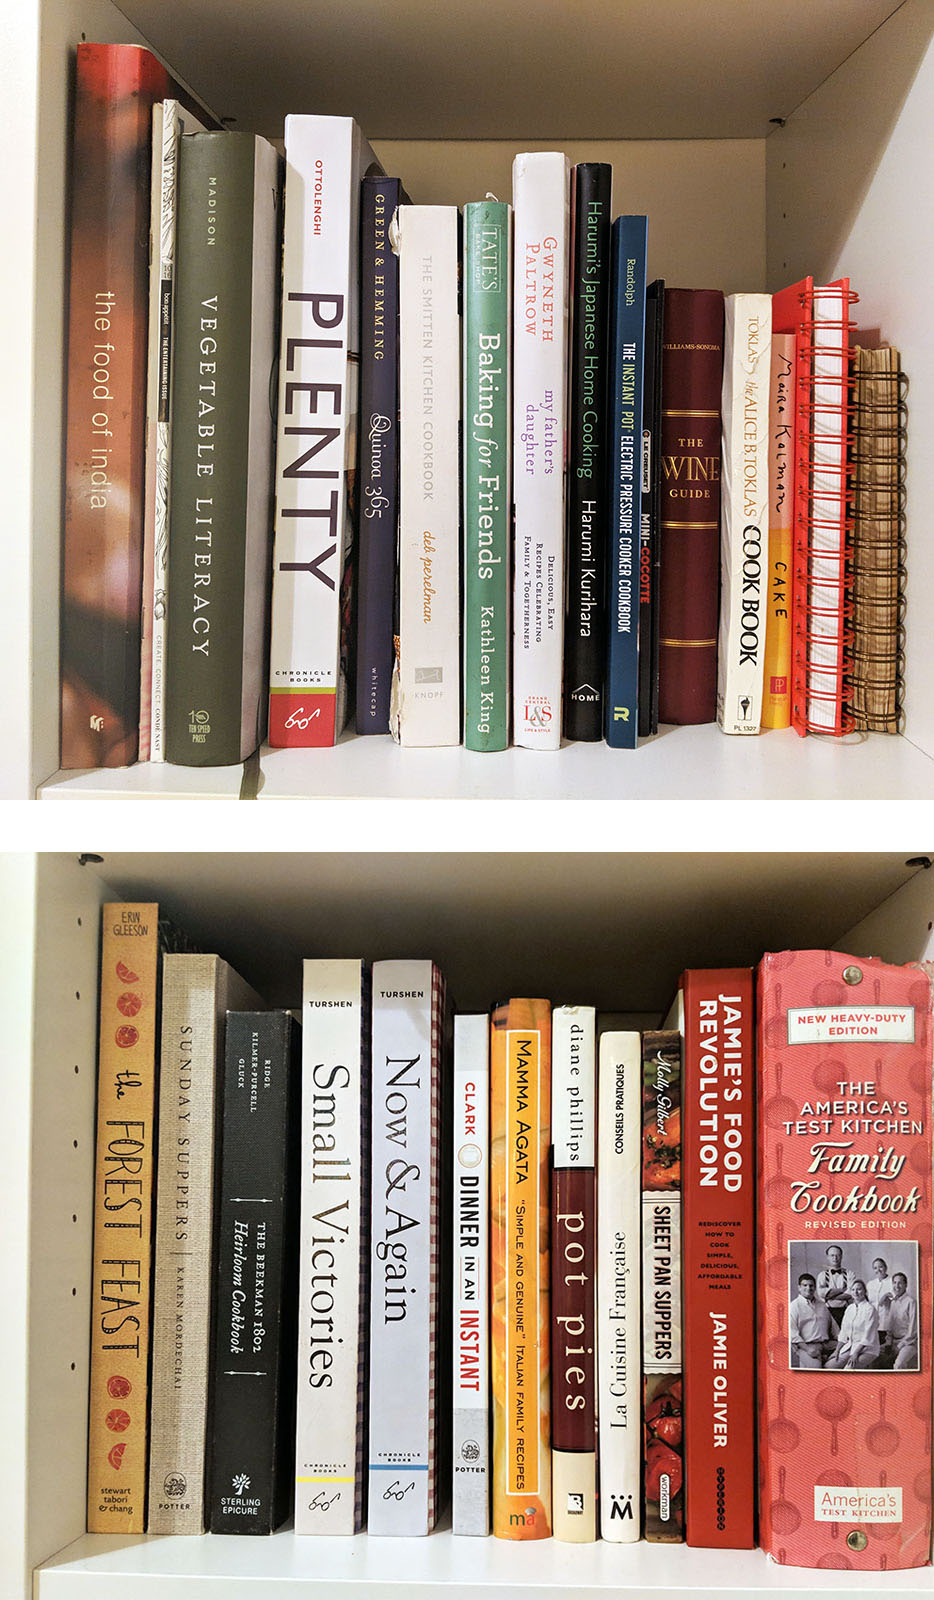 Bookshelf of cookbooks